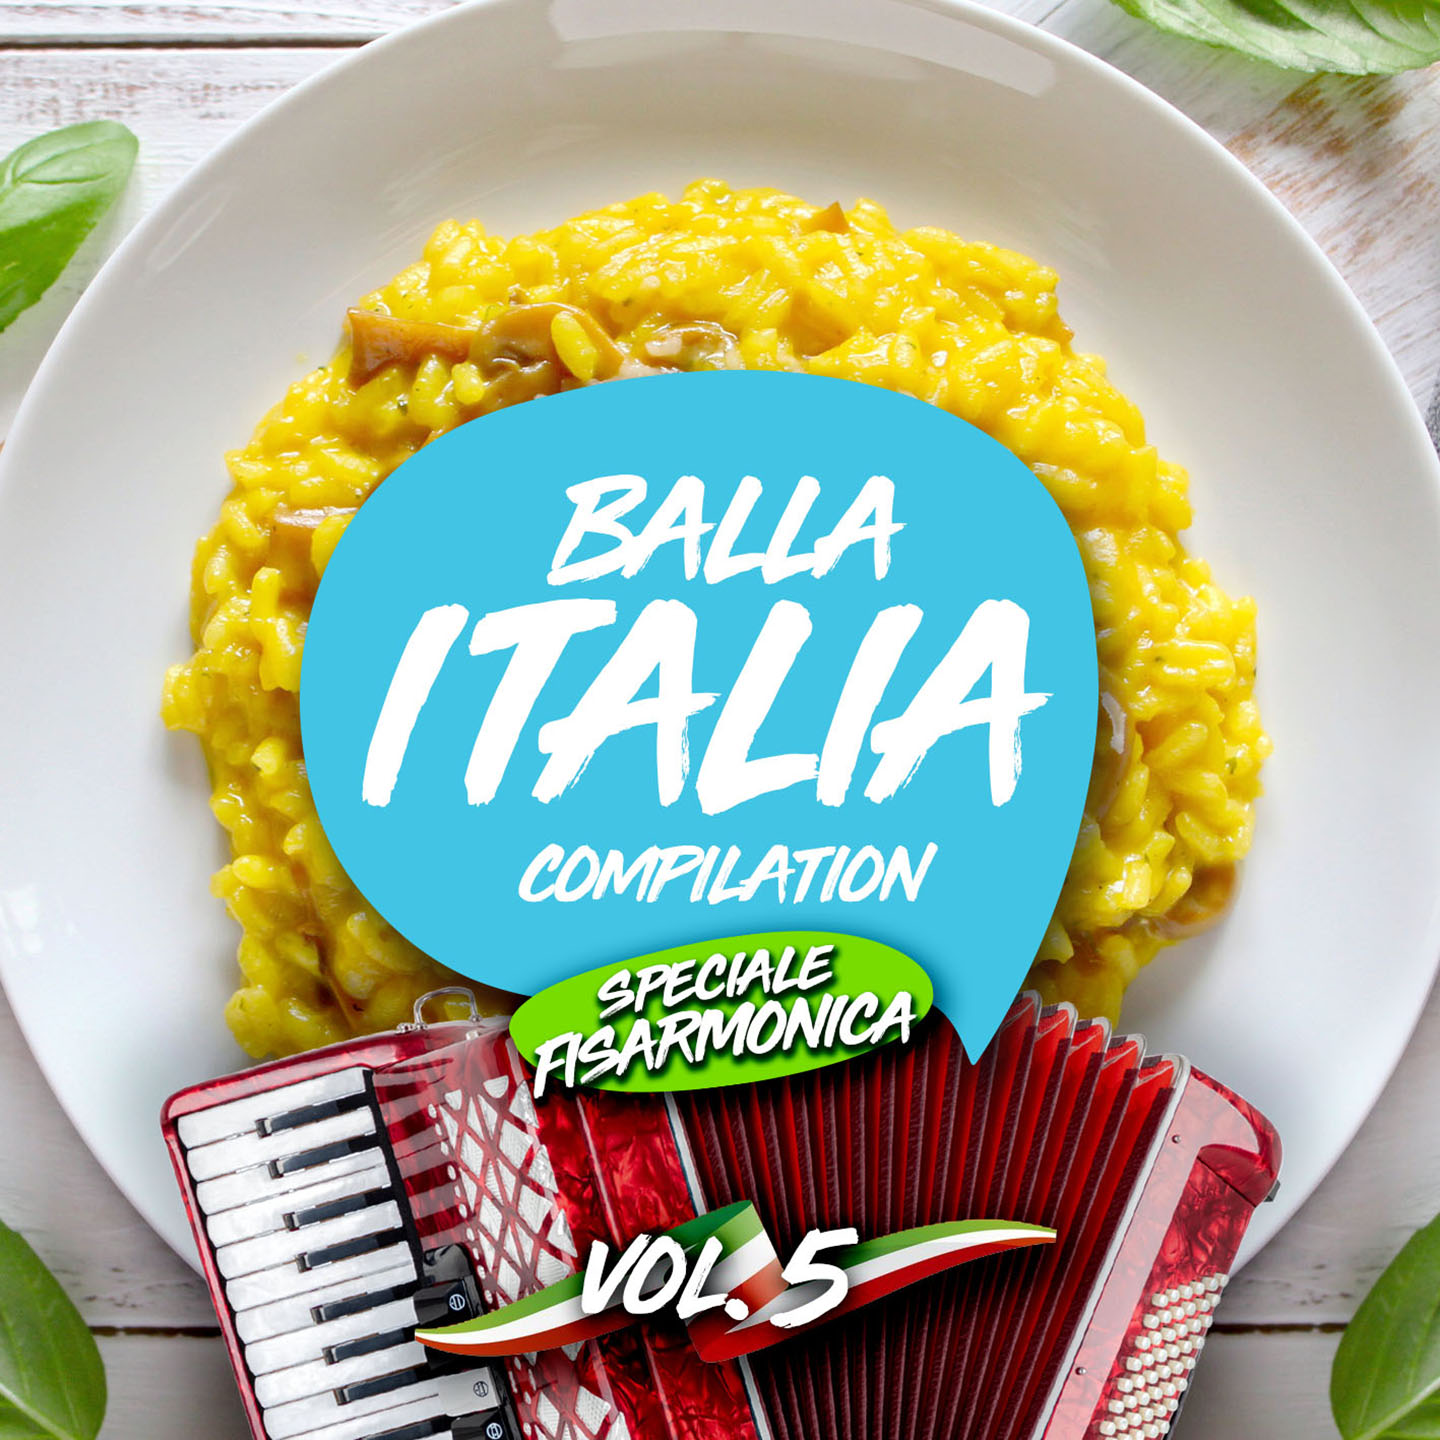 Balla italia vol.5 speciale fisarmonica